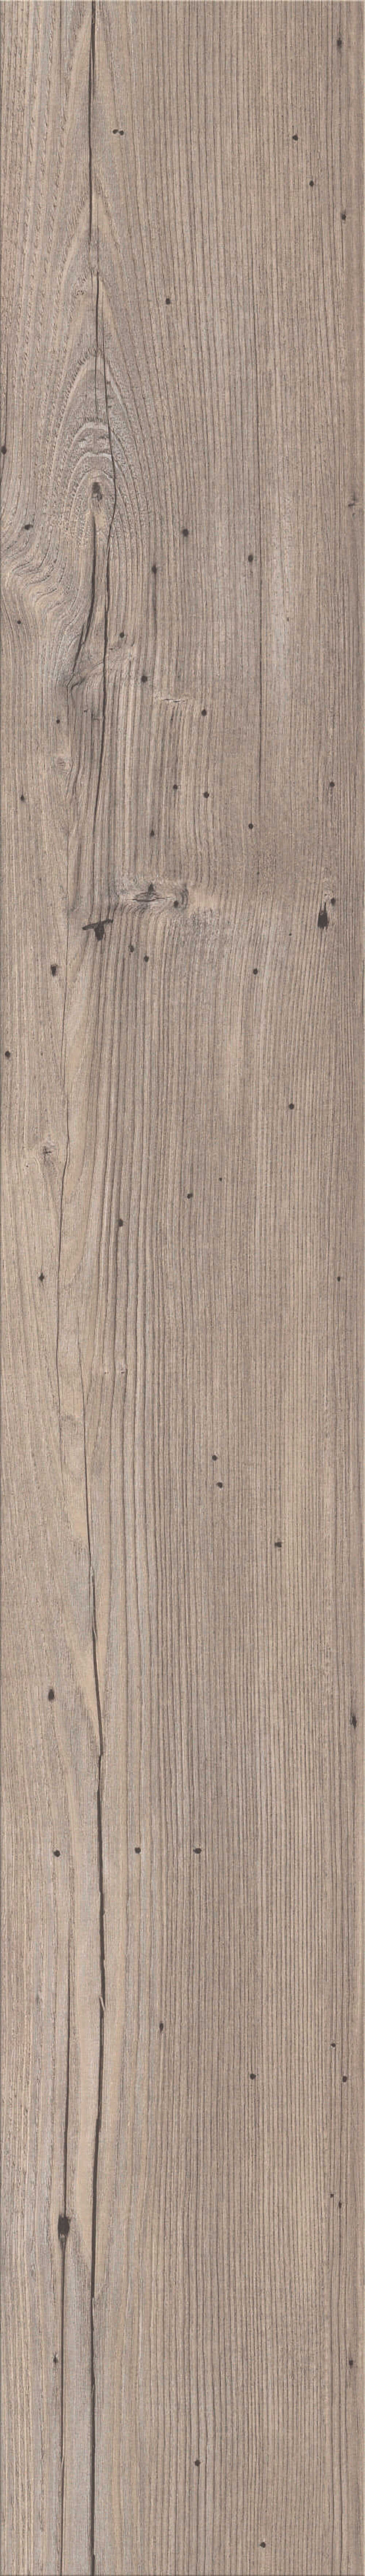 mFLOR Authentic Plank 81013 | PVC Plak Verde | L 121,92 x B 18,42 cm